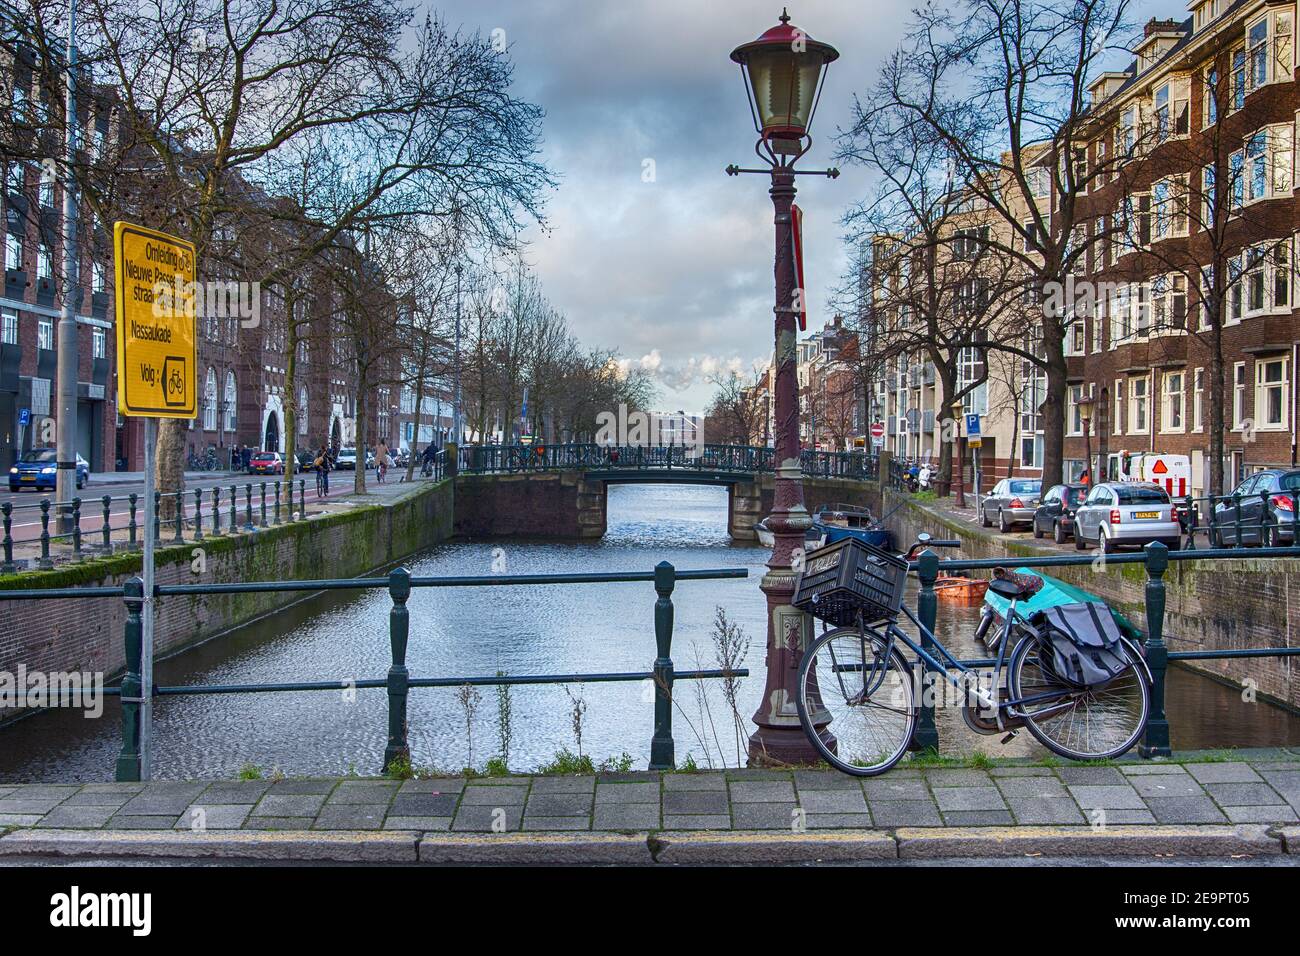 AMSTERDAM, PAESI BASSI - 4 dicembre 2015: Intorno ai canali di Amsterdam, in primo piano una bicicletta, il mezzo di trasporto più utilizzato. Olanda Foto Stock